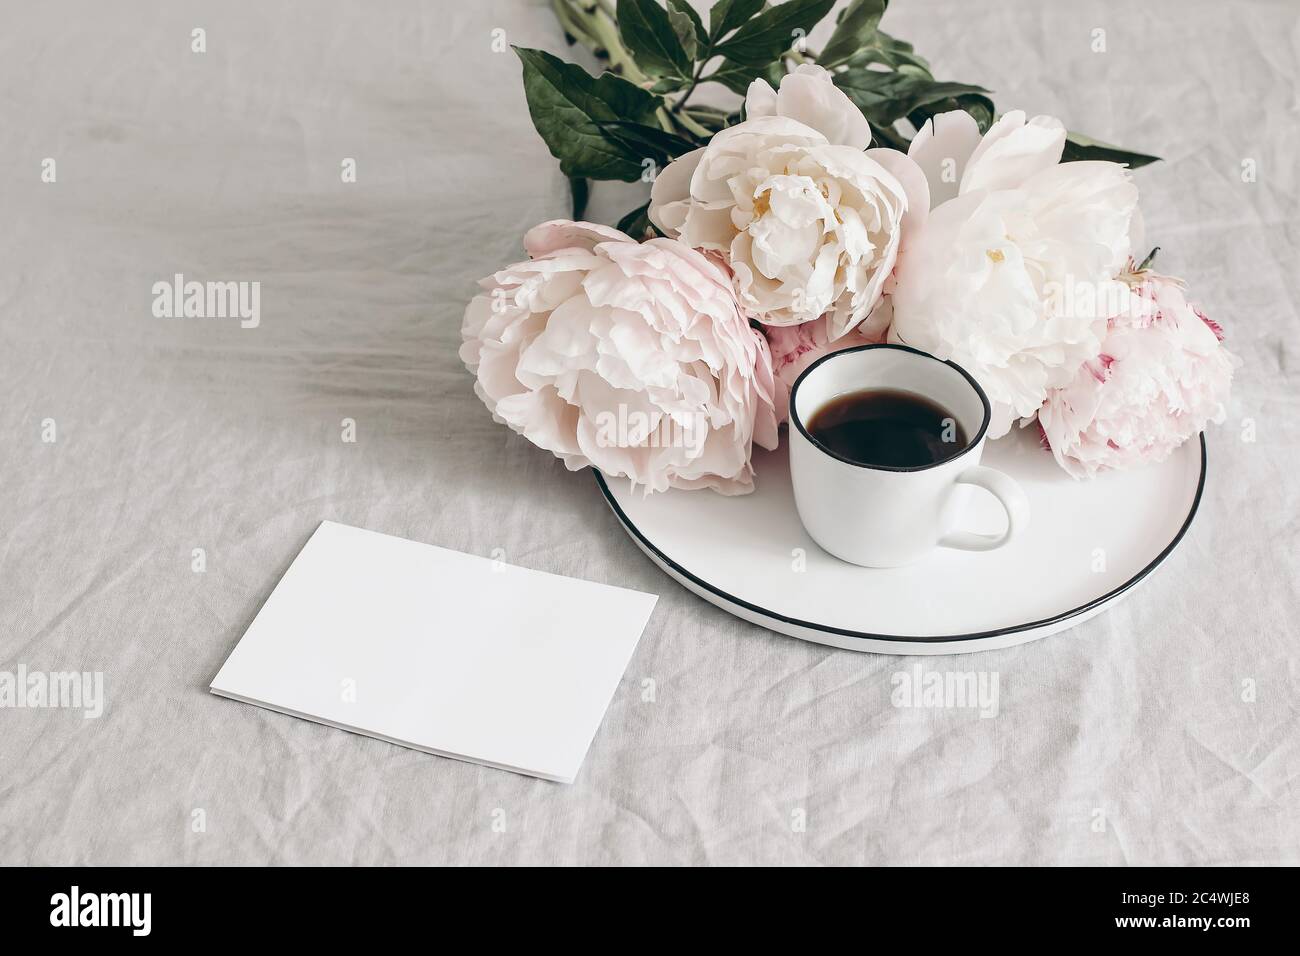 Le petit déjeuner de printemps encore la scène de vie. Tasse de café et bouquet de pivoines blanches et roses sur plaque en porcelaine. Carte de vœux vierge maquette sur table en lin Banque D'Images